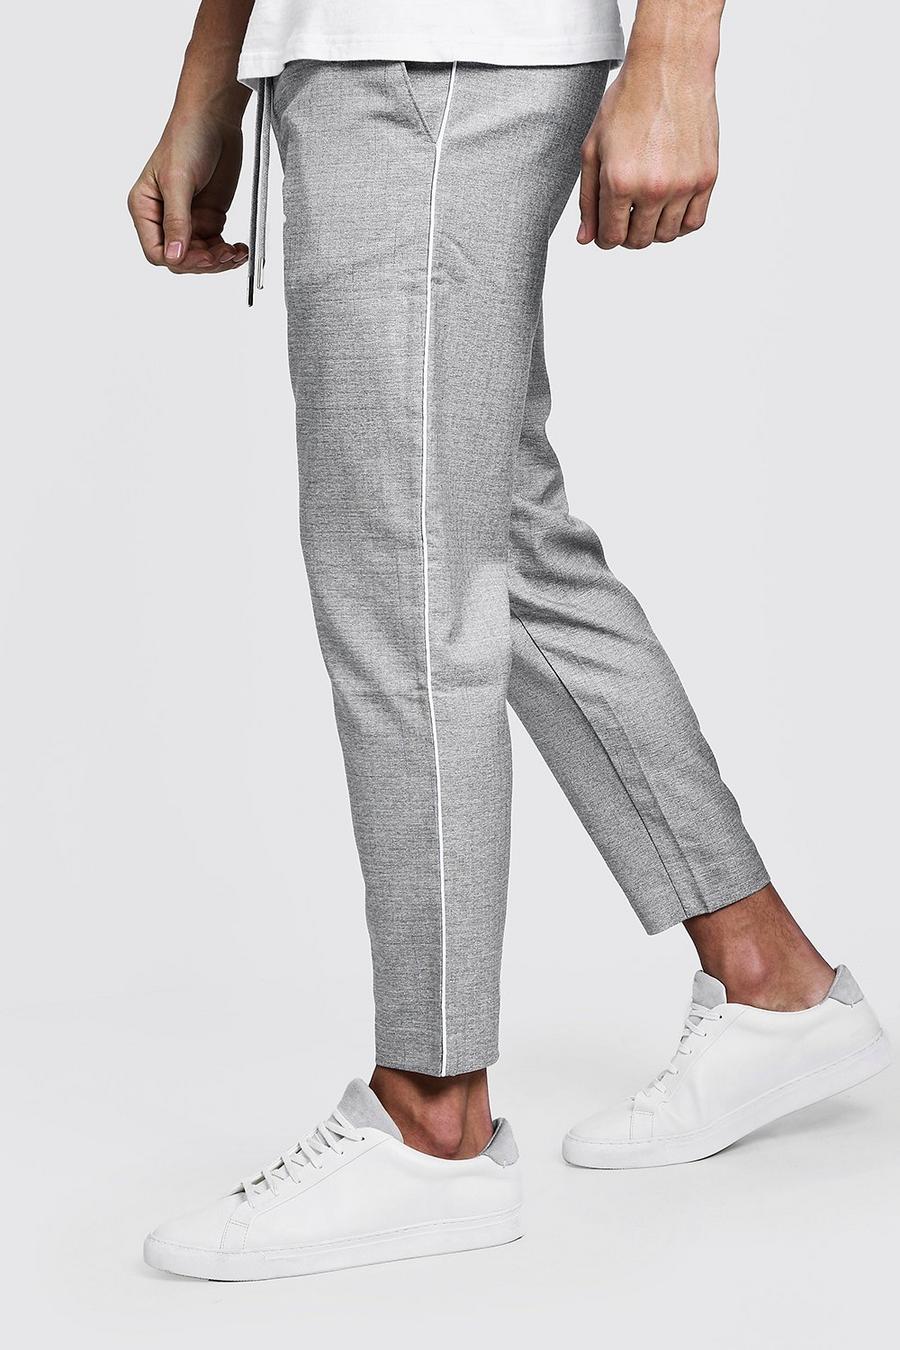 Pantalones de deporte tejidos color gris con costuras blancas laterales DA image number 1